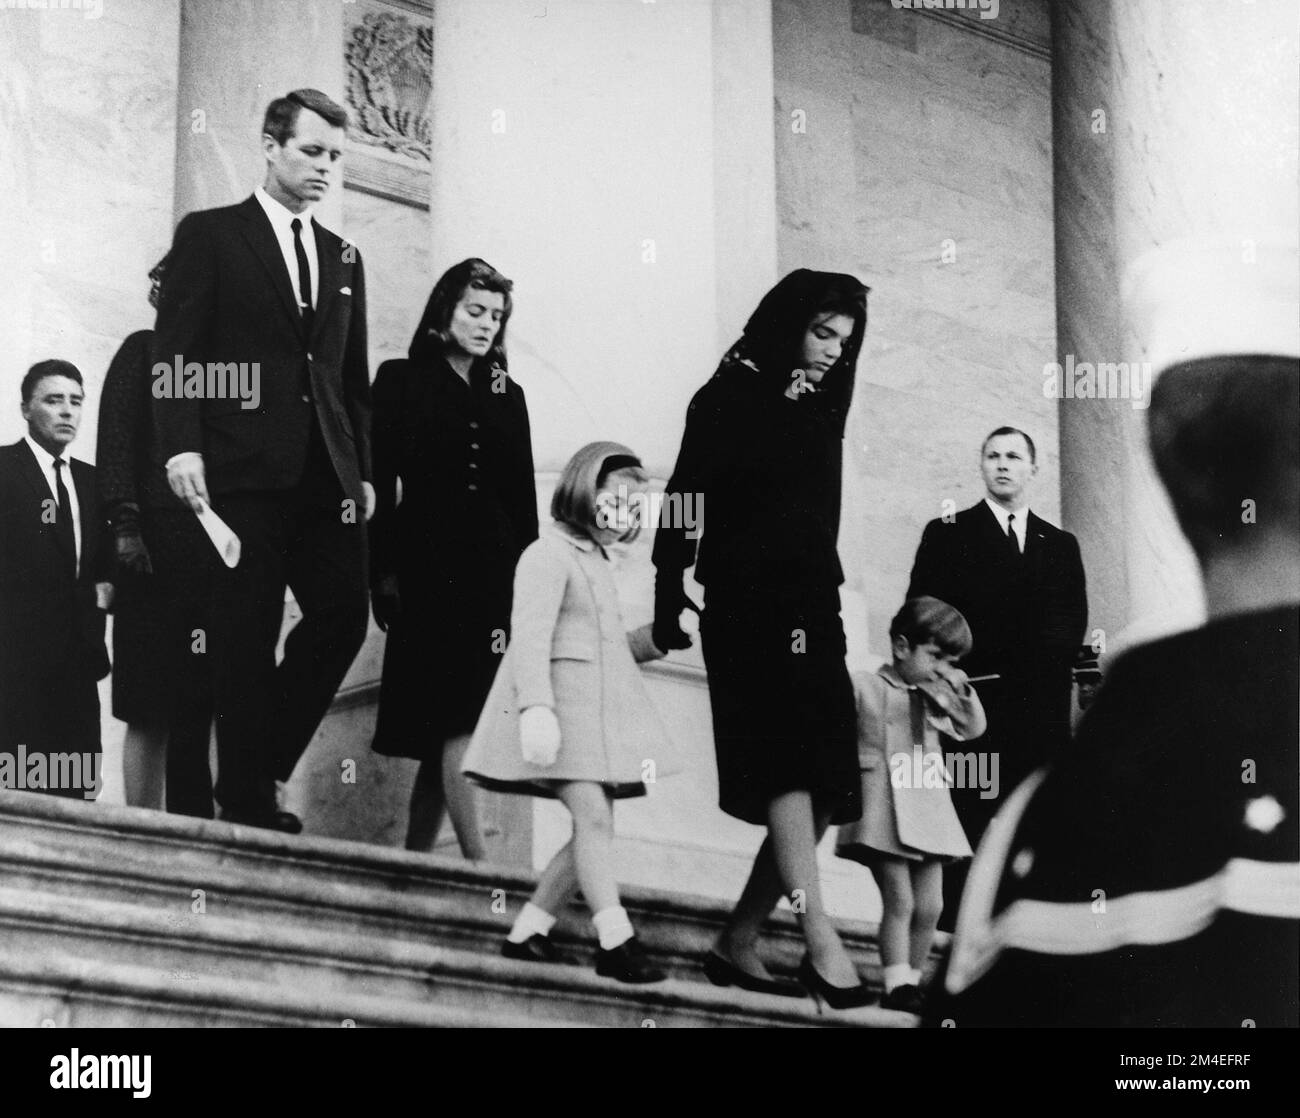 Une photo émouvante de Jackie Kennedy visiblement choquée et affligée avec ses deux enfants caroléine et John Jr., alors qu'ils font du levain aux États-Unis Capitole après un service dans l'État pour le président, 24 novembre 1963 Banque D'Images